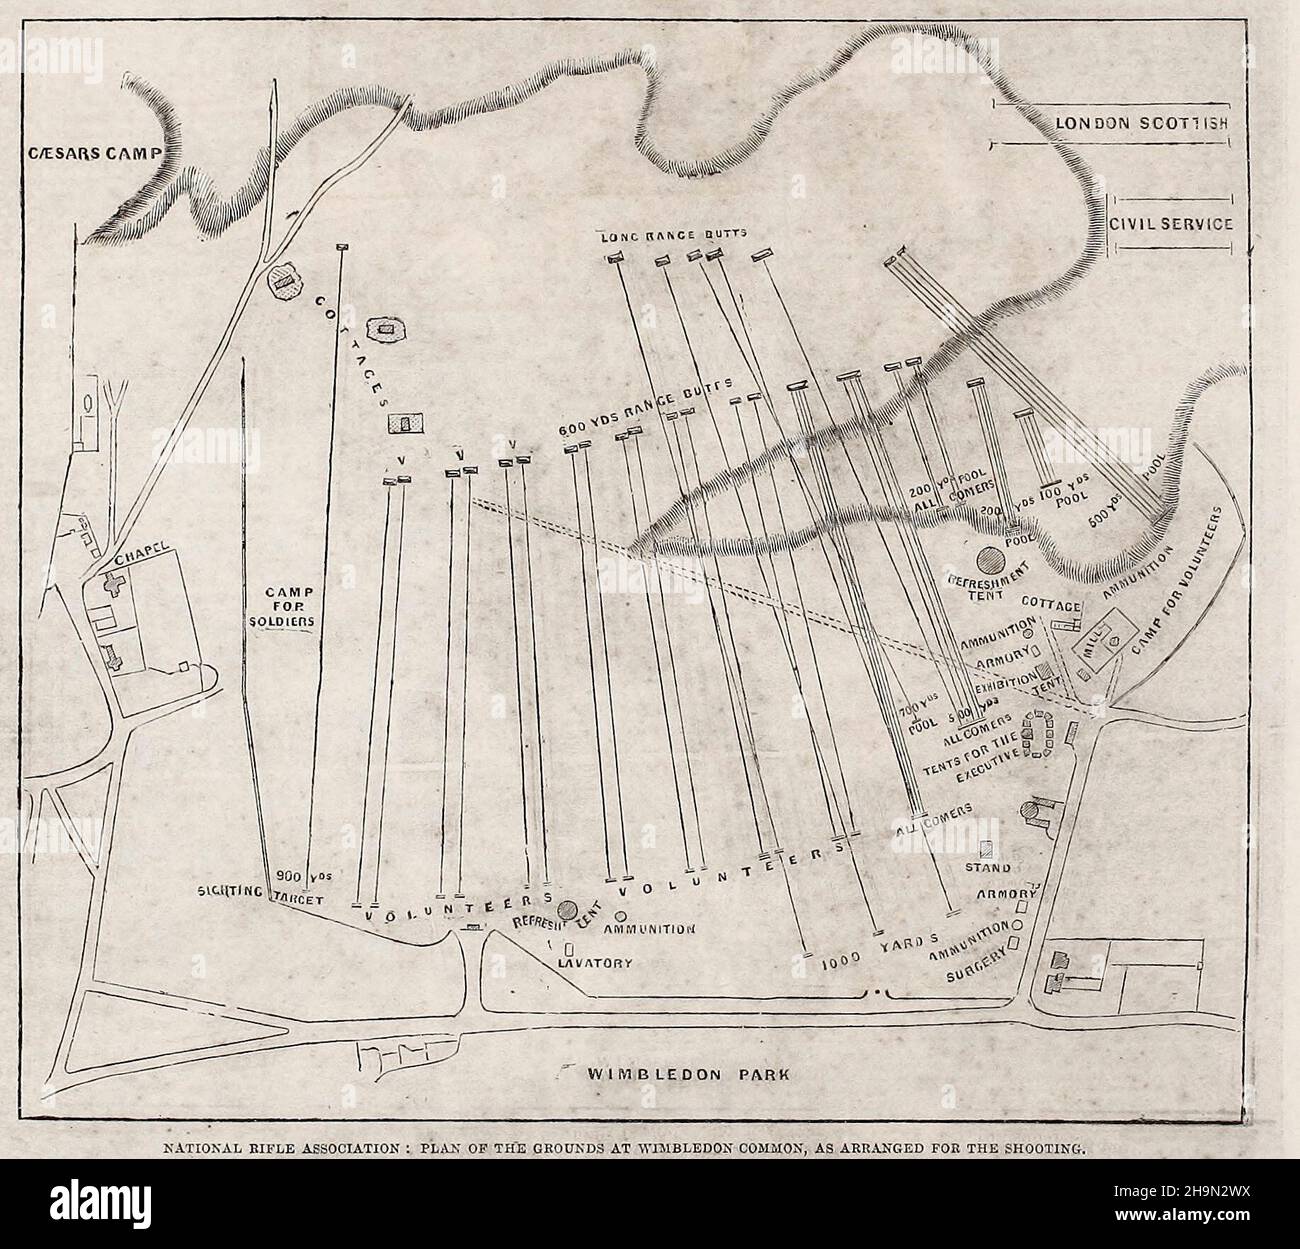 Asociación Nacional del Rifle - Plan de los terrenos en Wimbledon Common, según lo dispuesto para el rodaje, 1861 Foto de stock